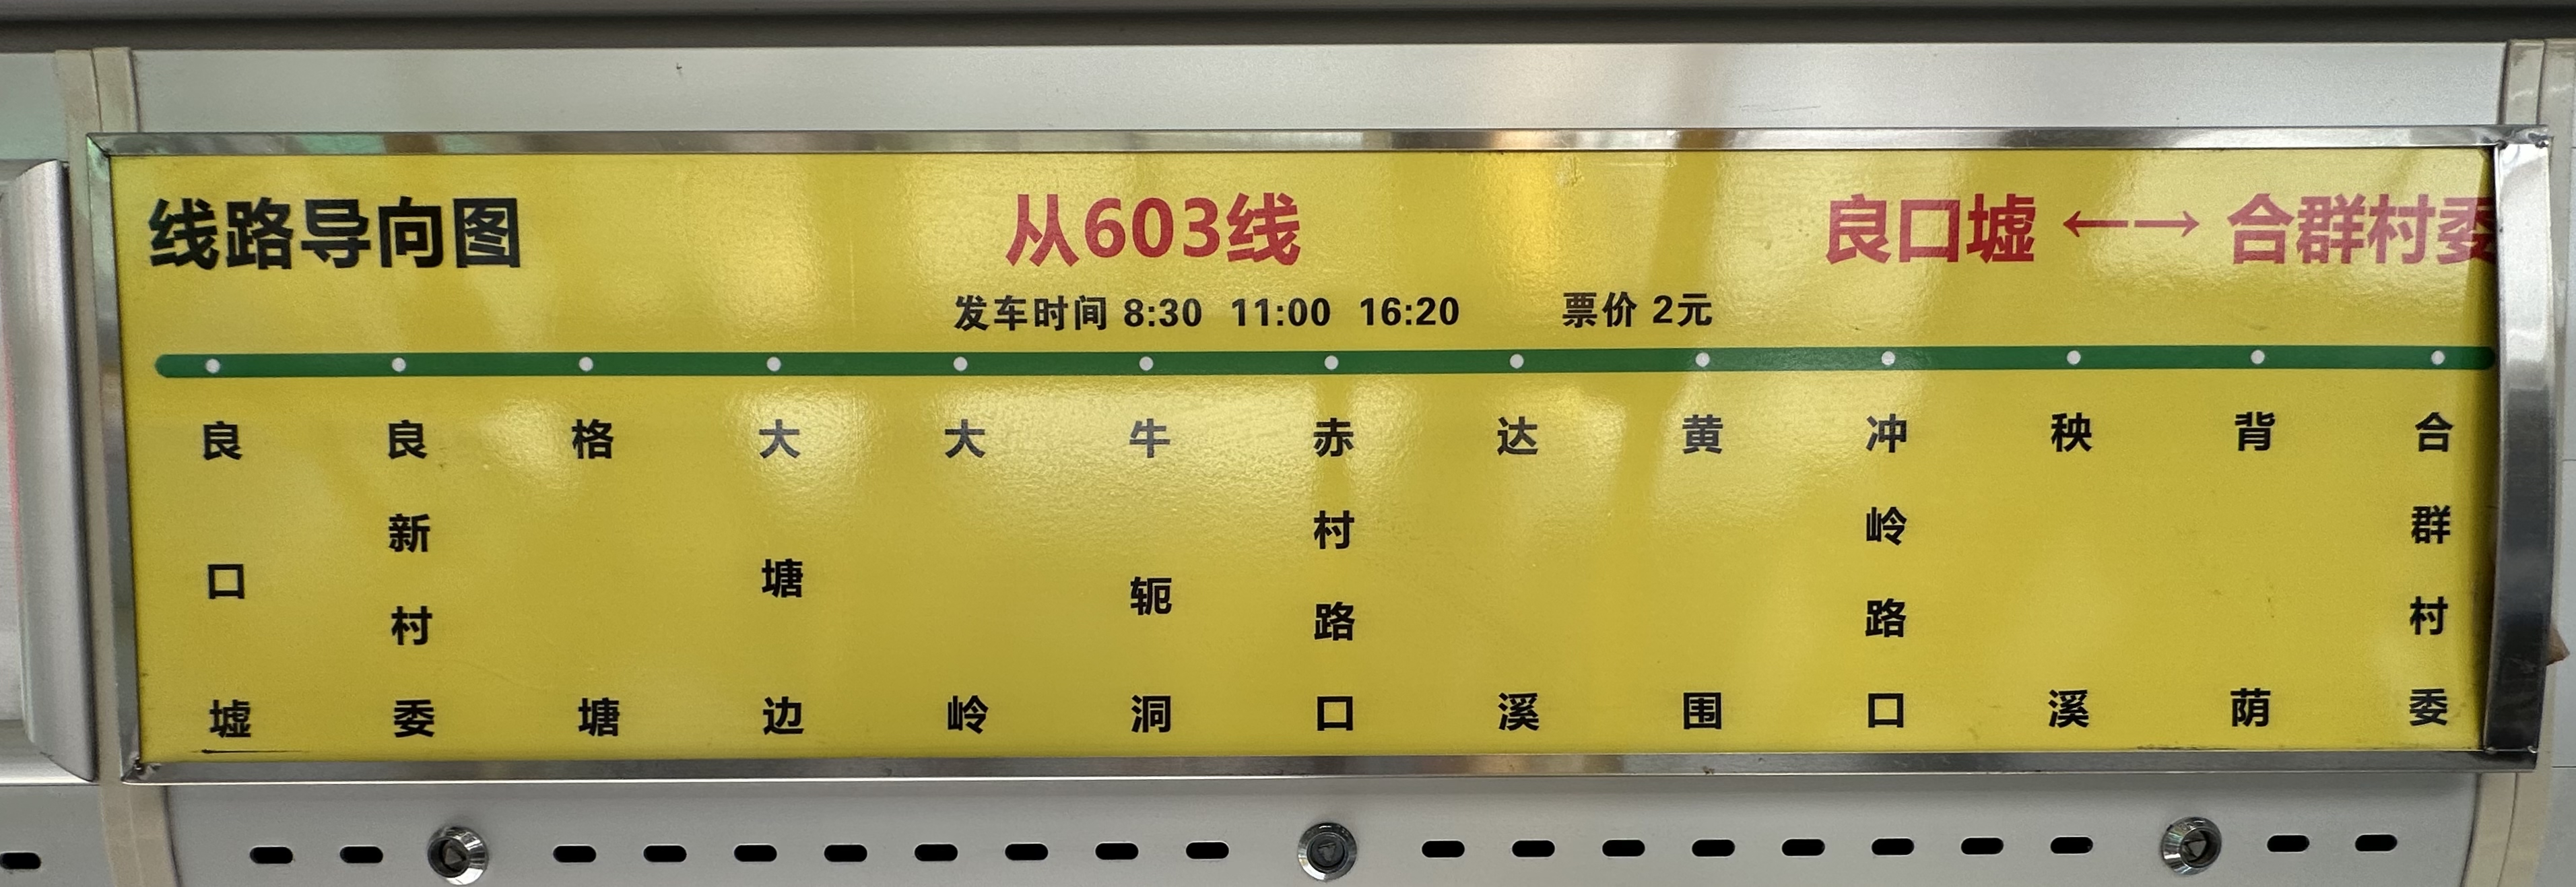 广州从603路公交车路线